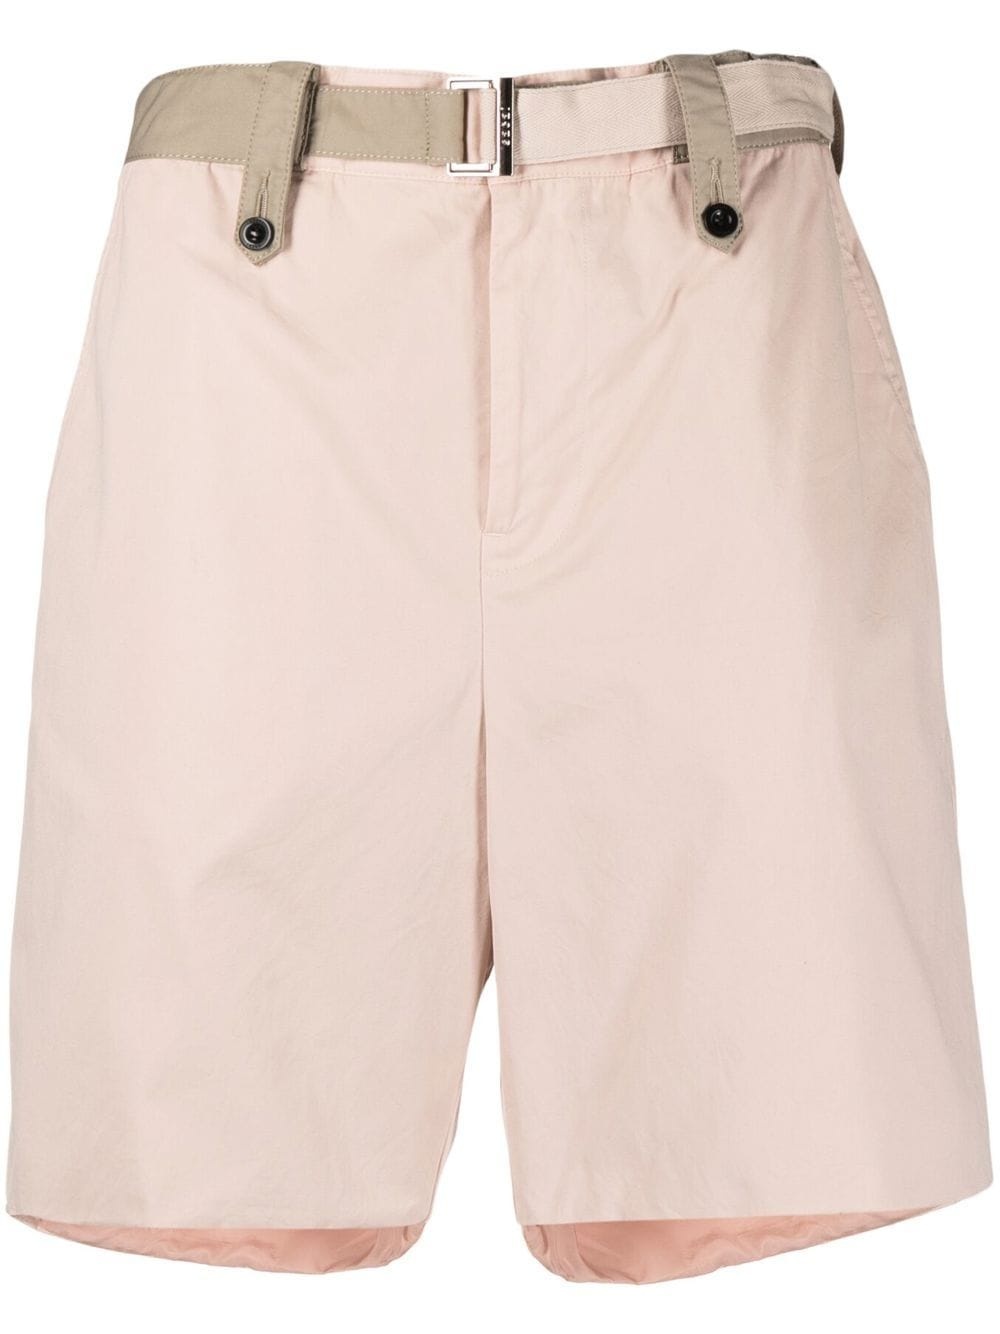 belted-waist bermuda shorts - 1